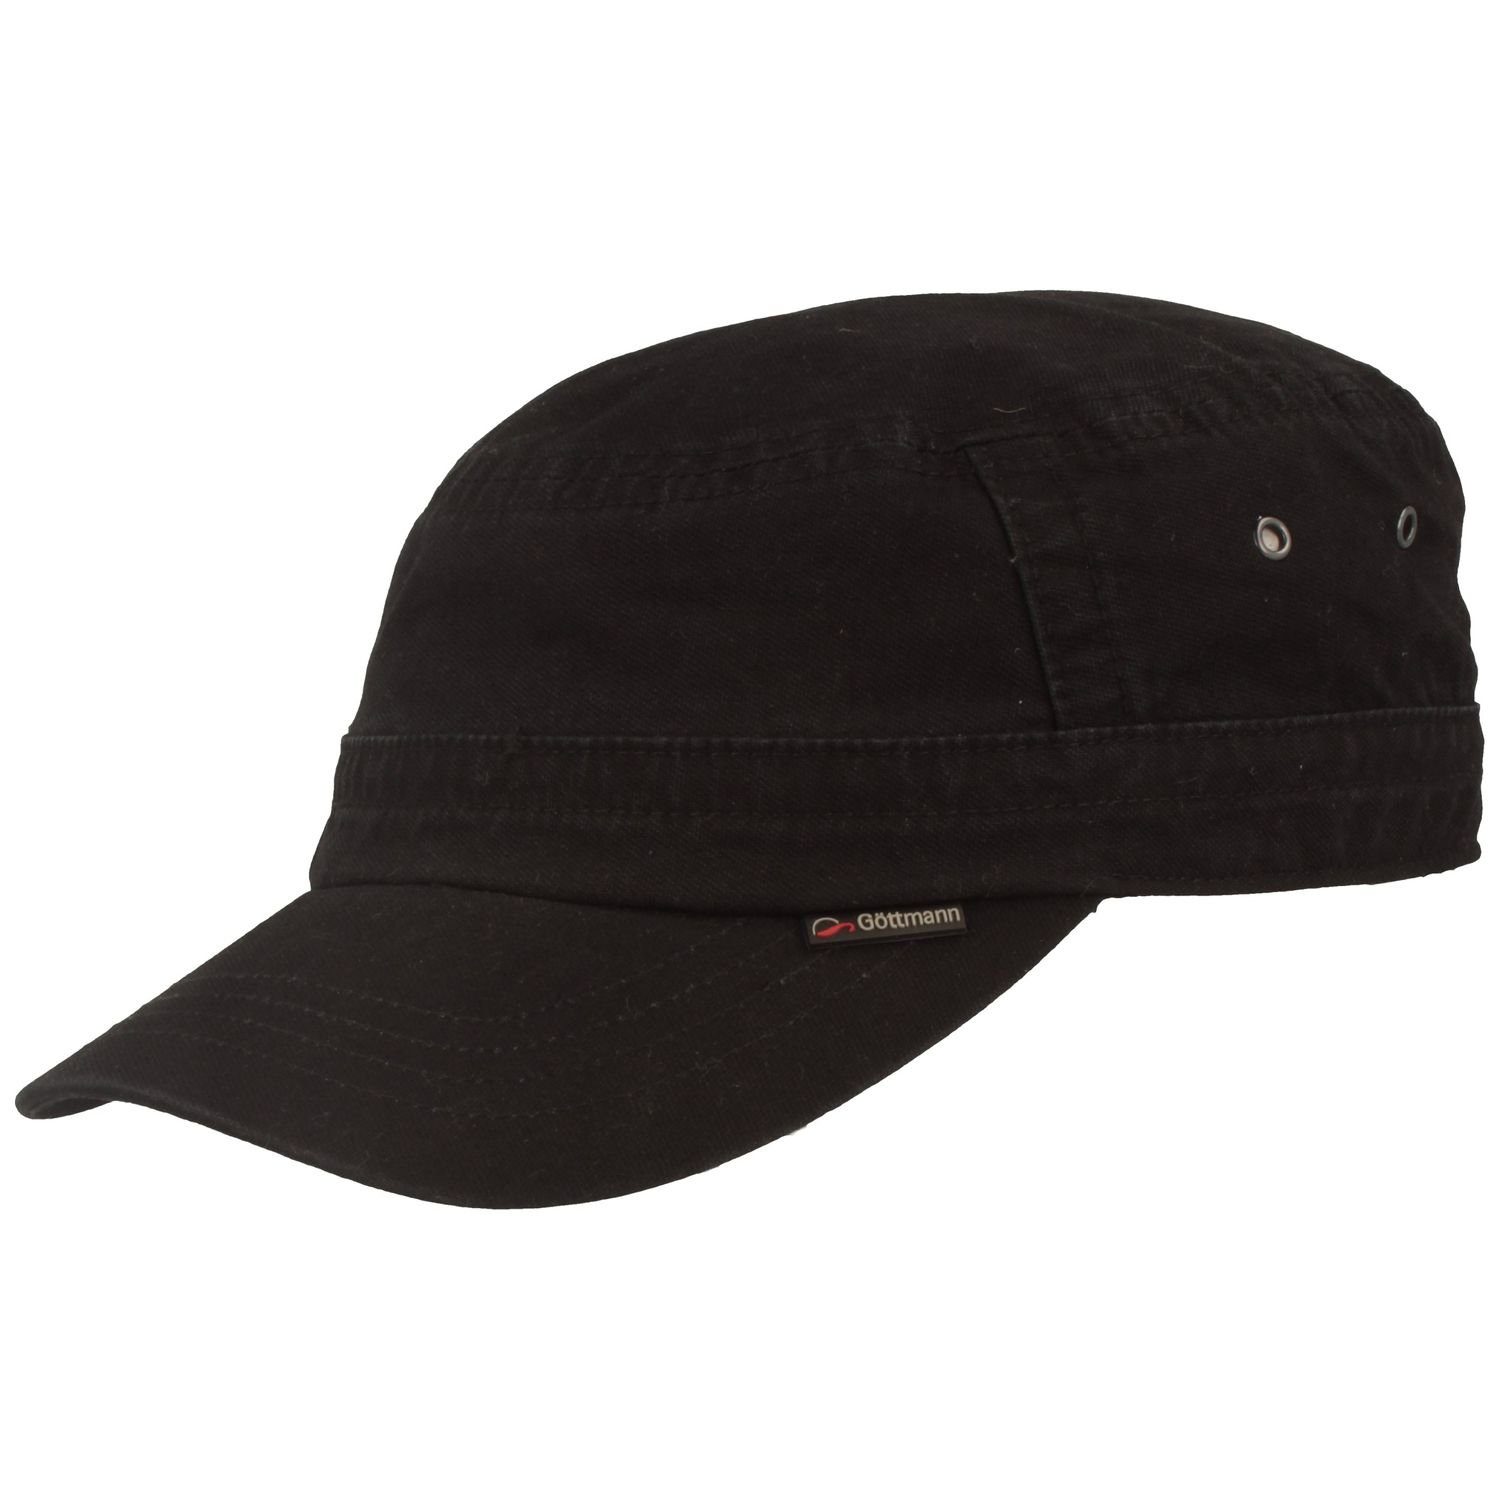 Göttmann Army Cap Army Cap mit UV-Schutz aus Baumwolle 19 schwarz